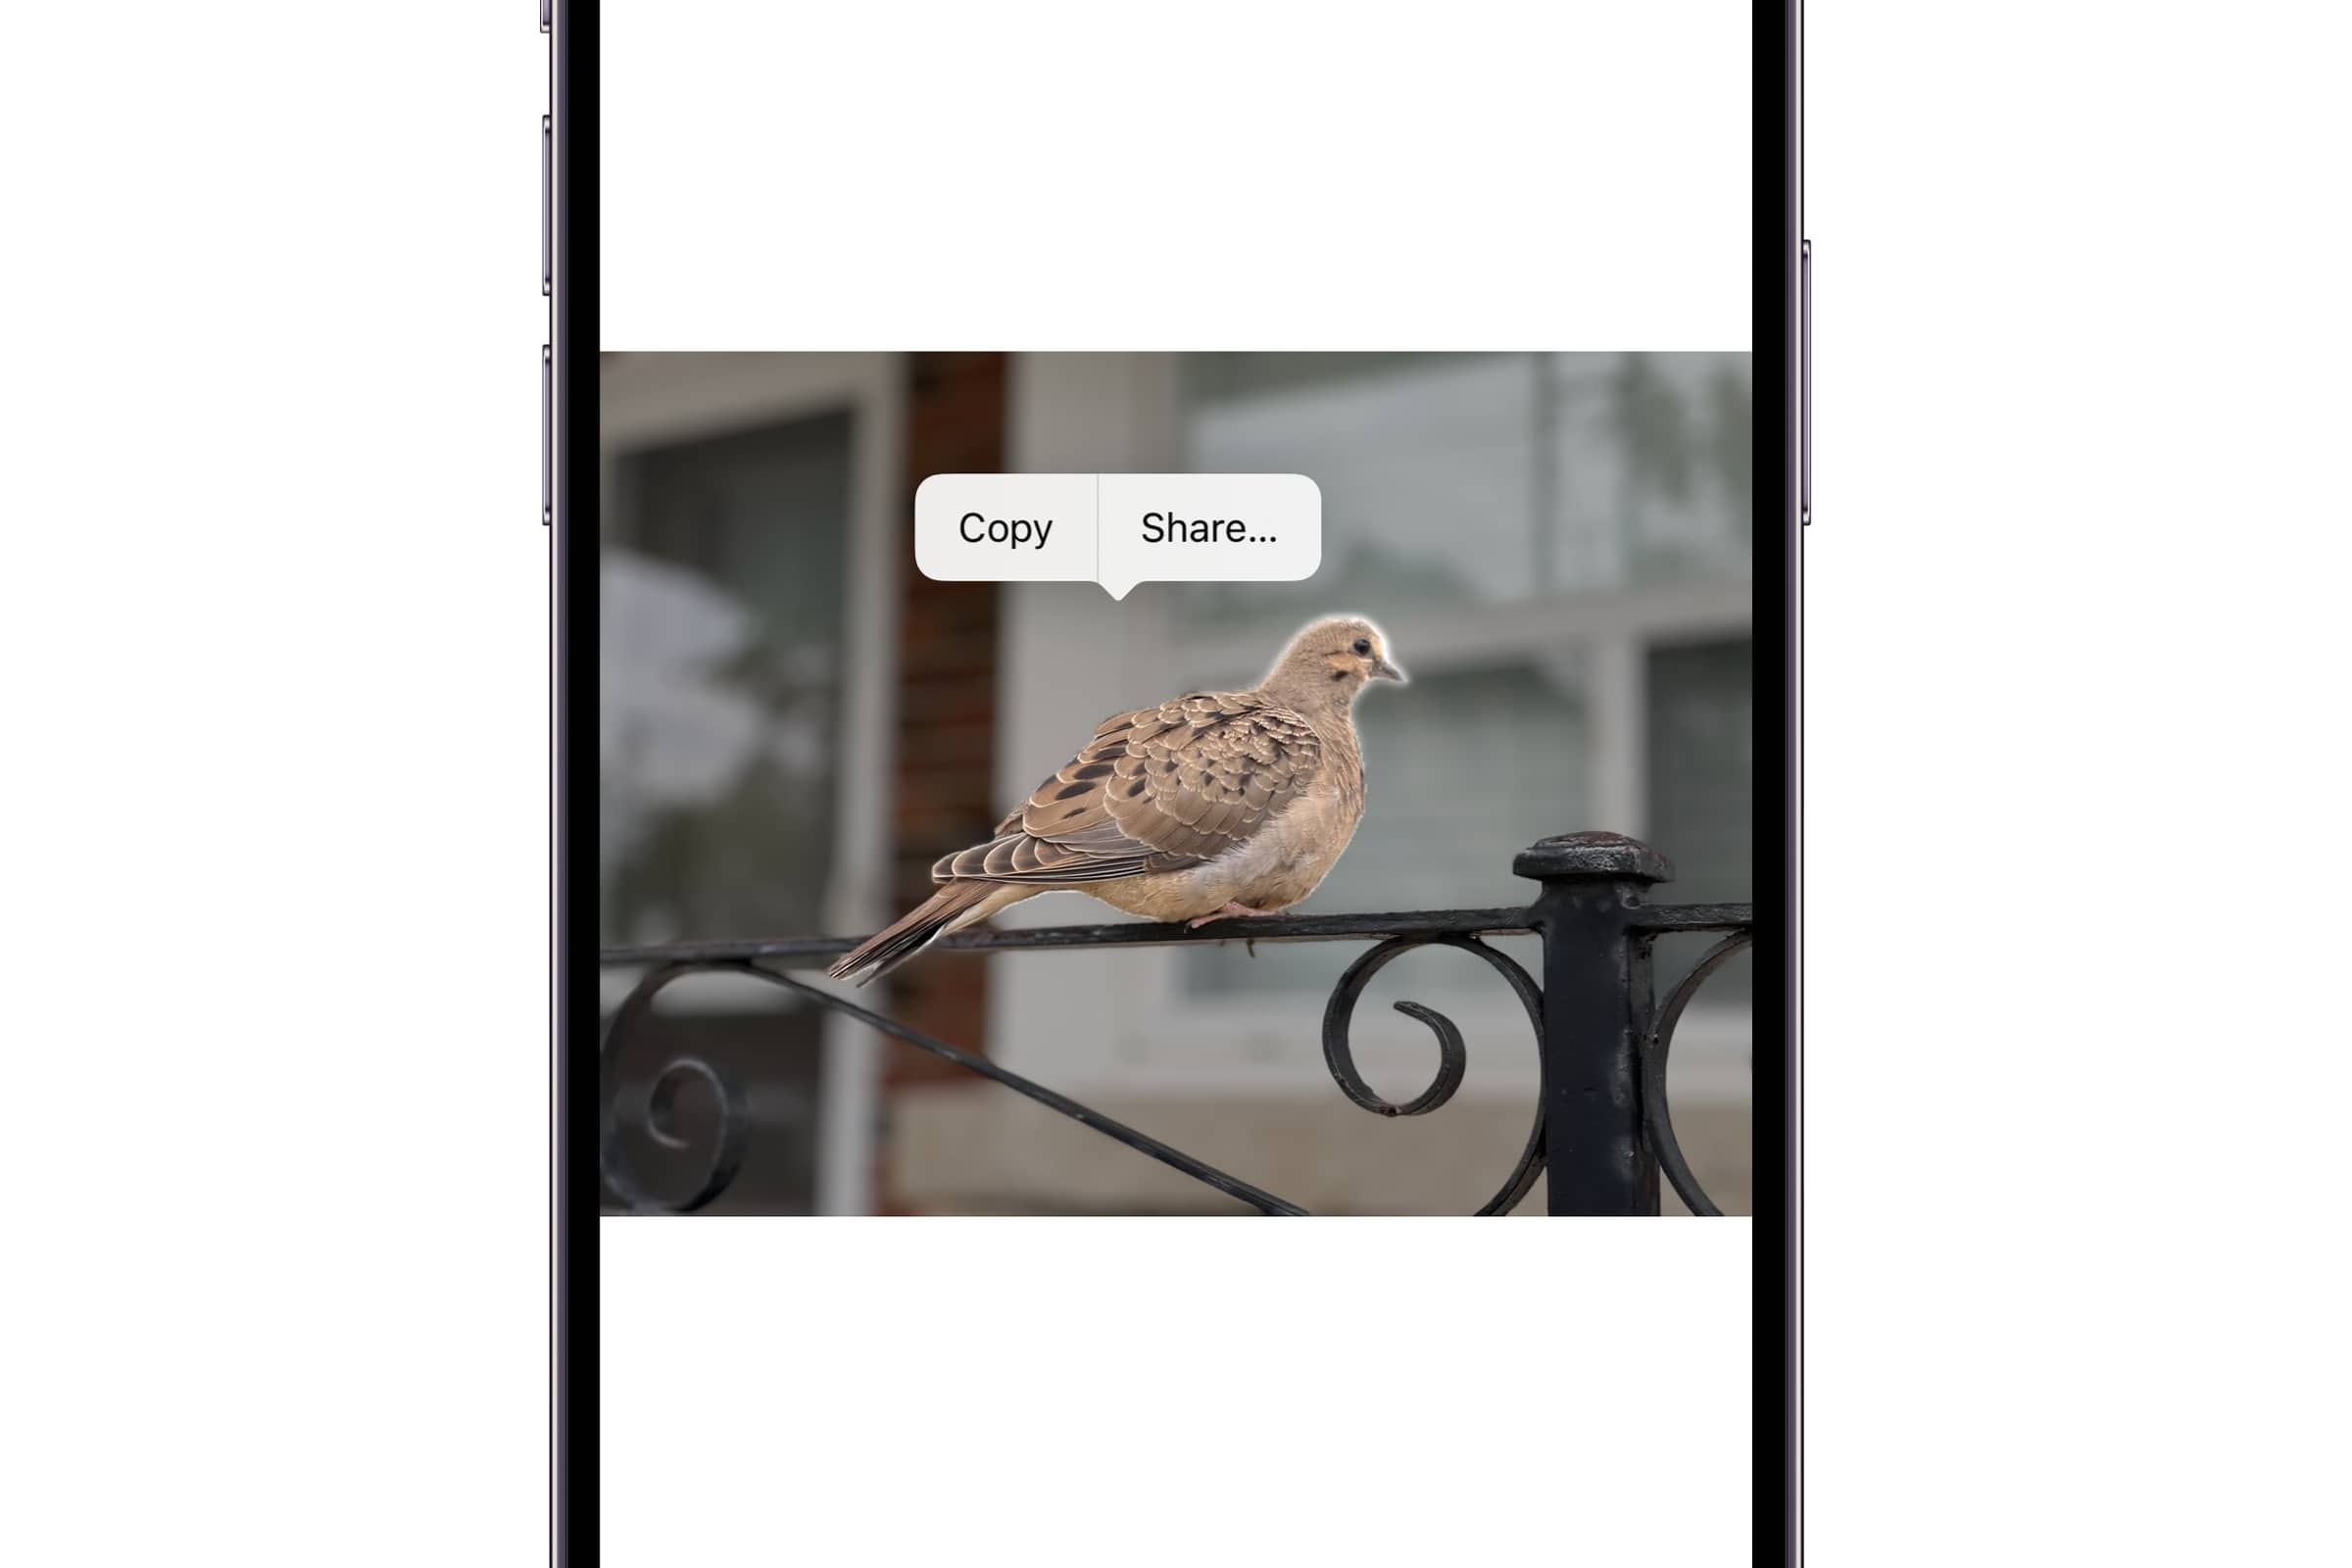 iPhone показывает фотографию птицы с контекстным меню для копирования или отправки объекта.